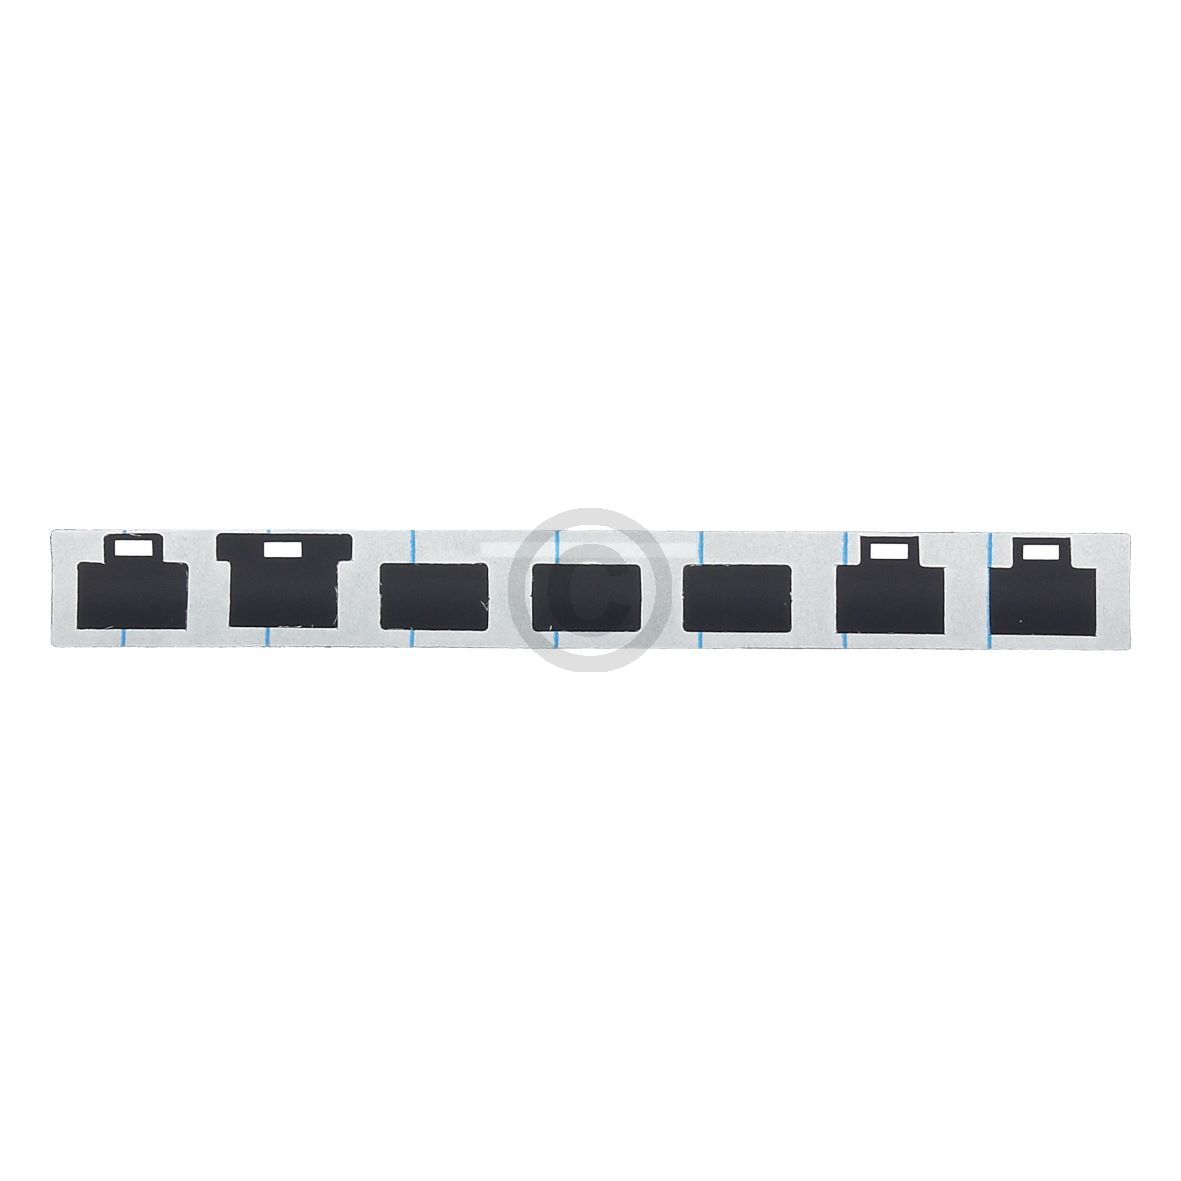 Tastaturfolie kompatibel mit Küppersbusch 536325 für Dunstabzugshaube